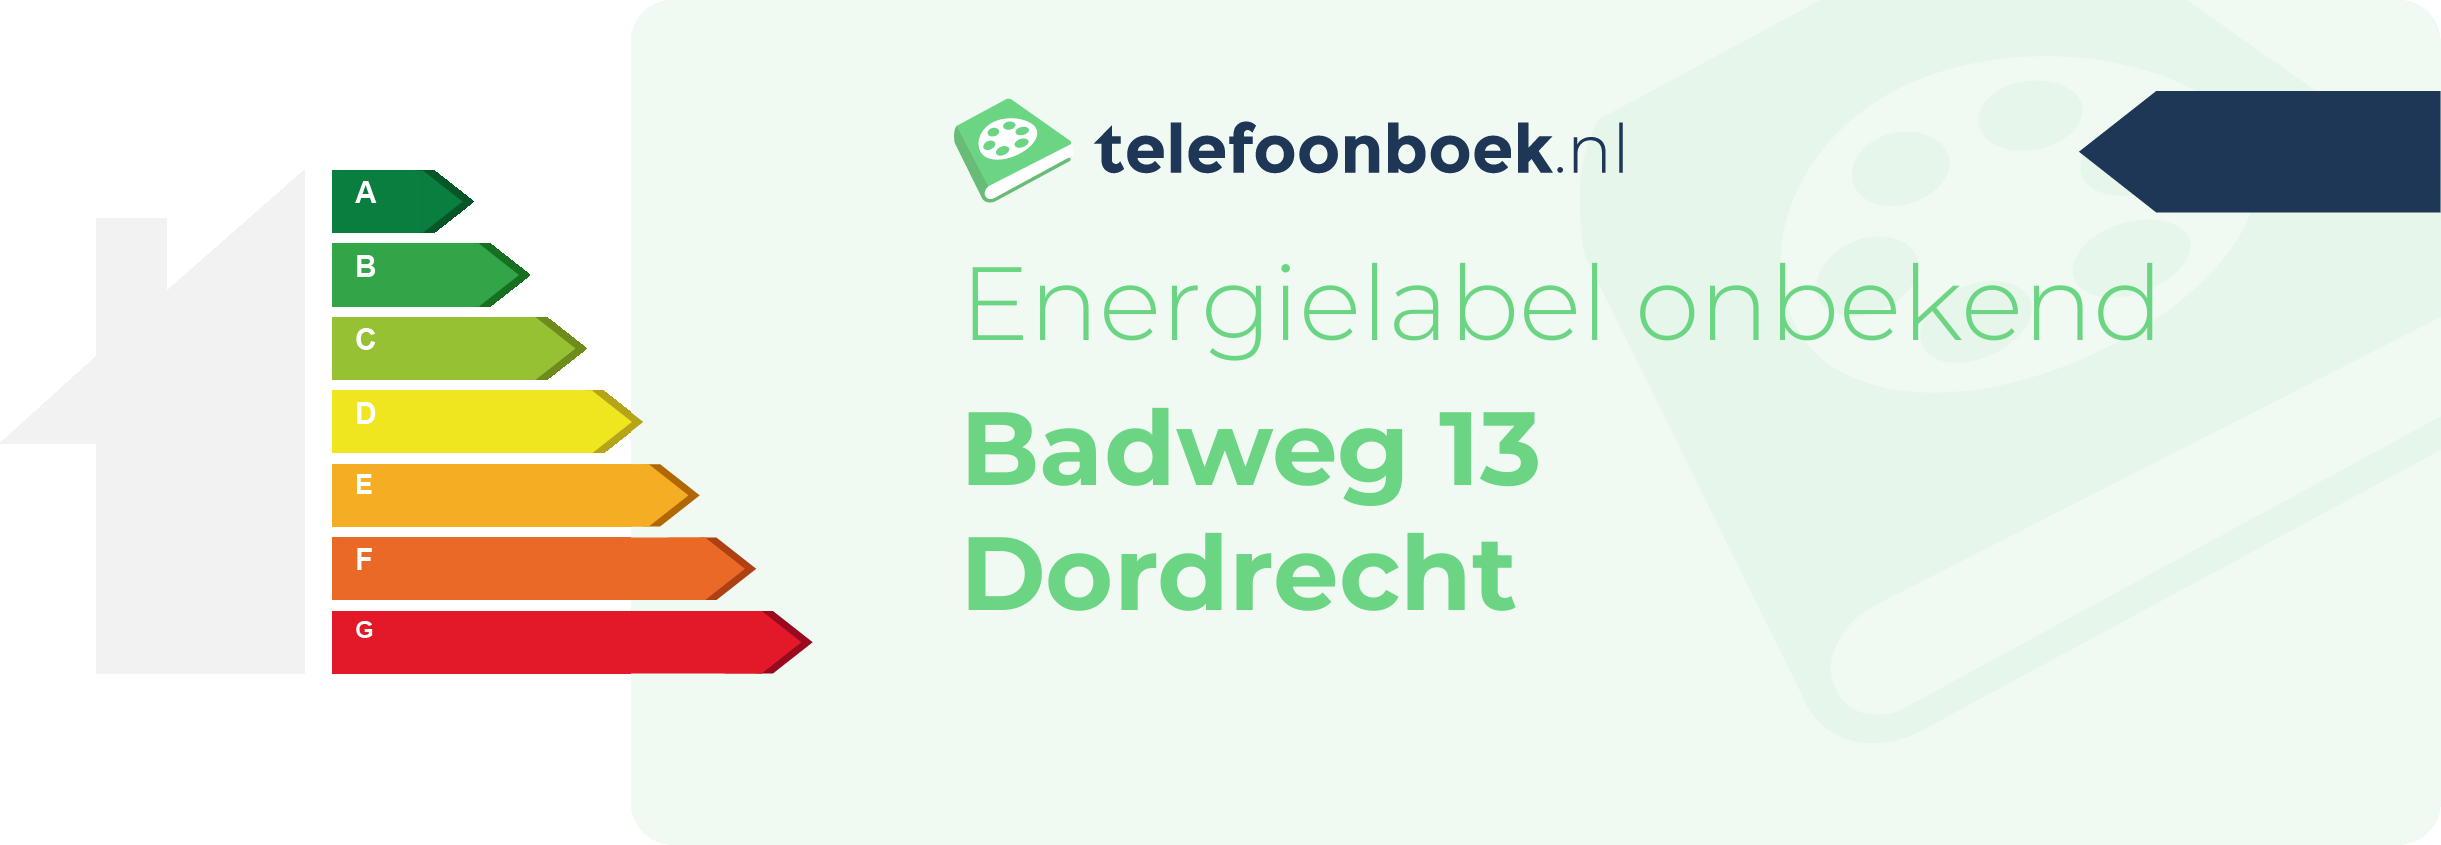 Energielabel Badweg 13 Dordrecht